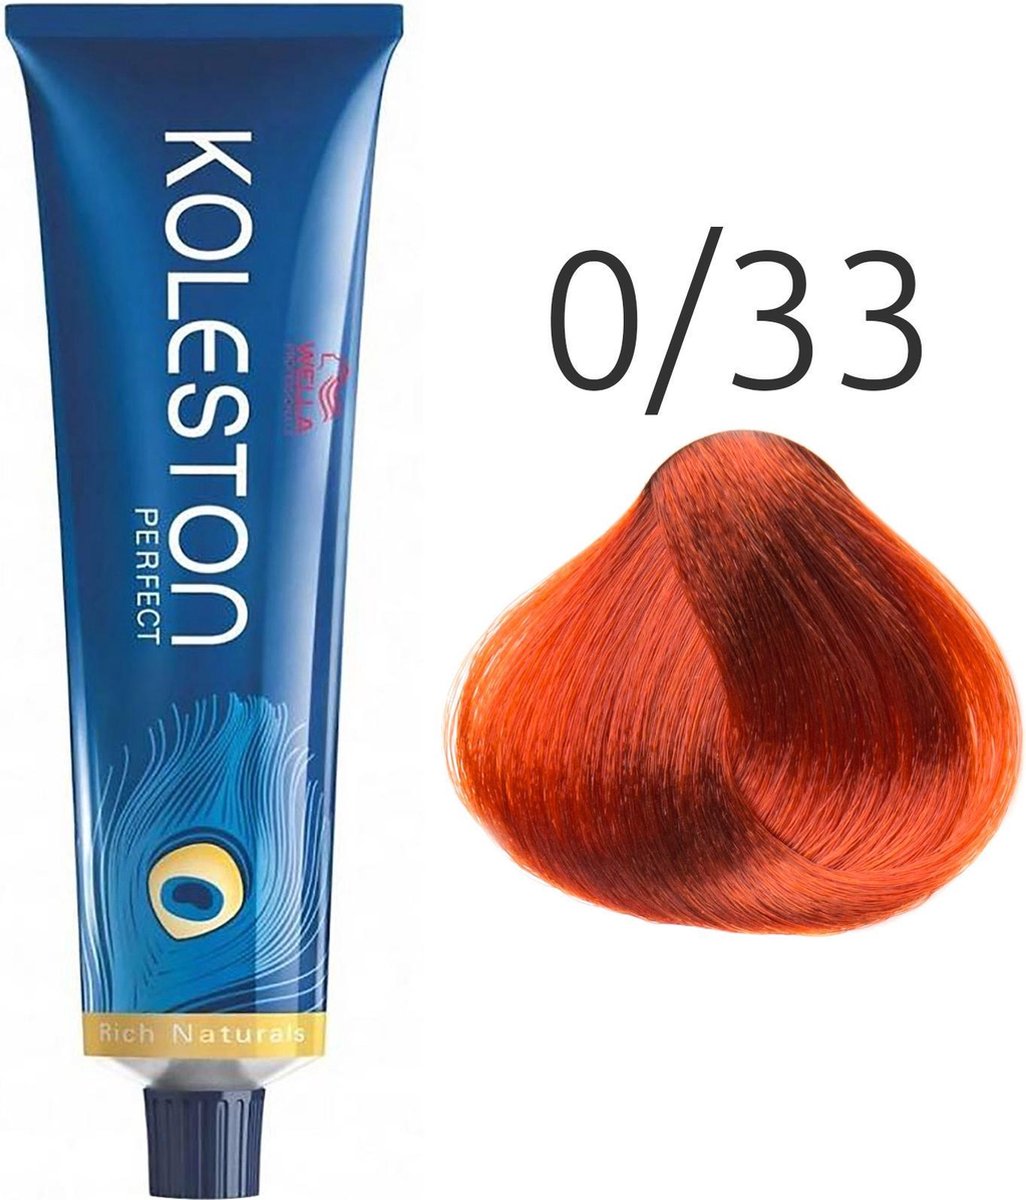 Barva na vlasy Wella Koleston Perfect 0/33 Gold intensiv 60 ml - zvìtšit obrázek